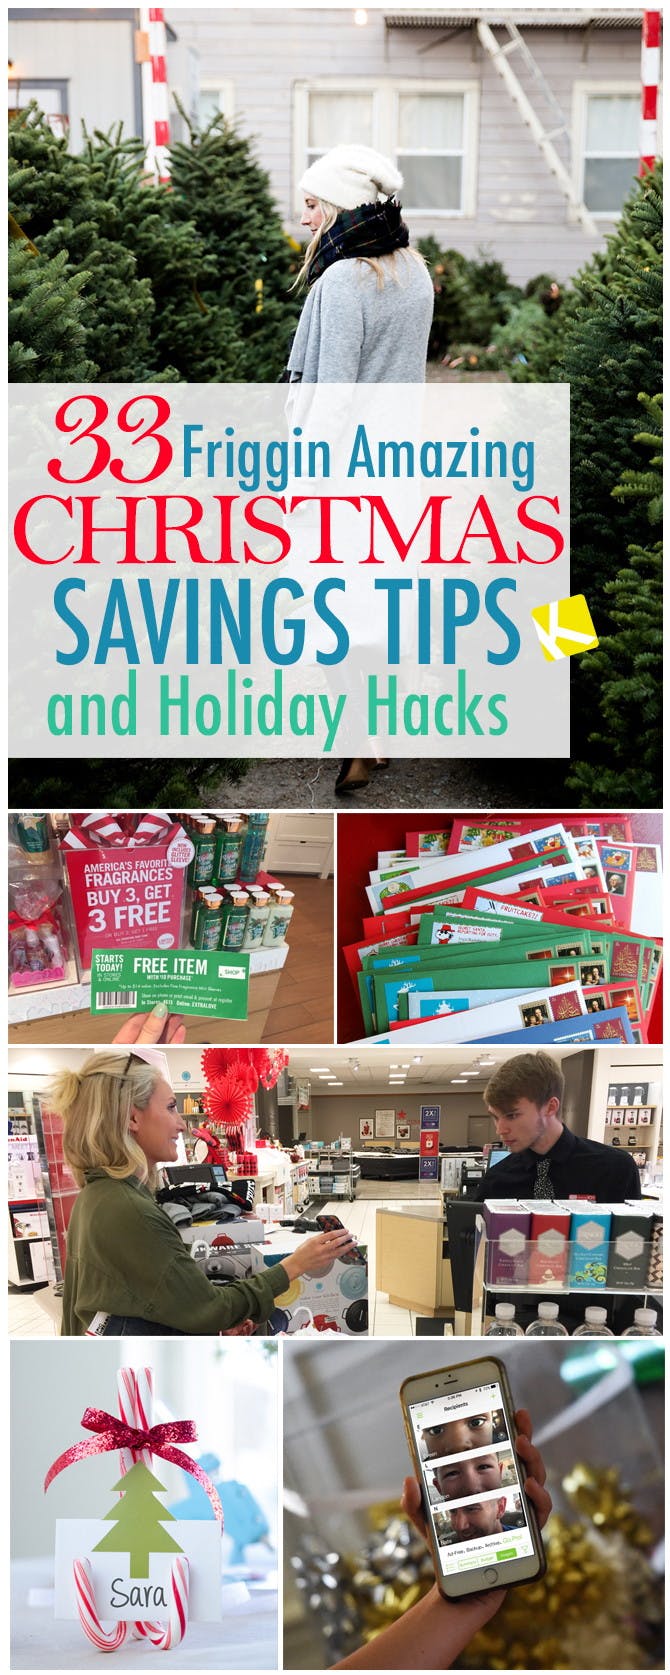 32 Amazing Christmas Savings Tips and Holiday Hacks